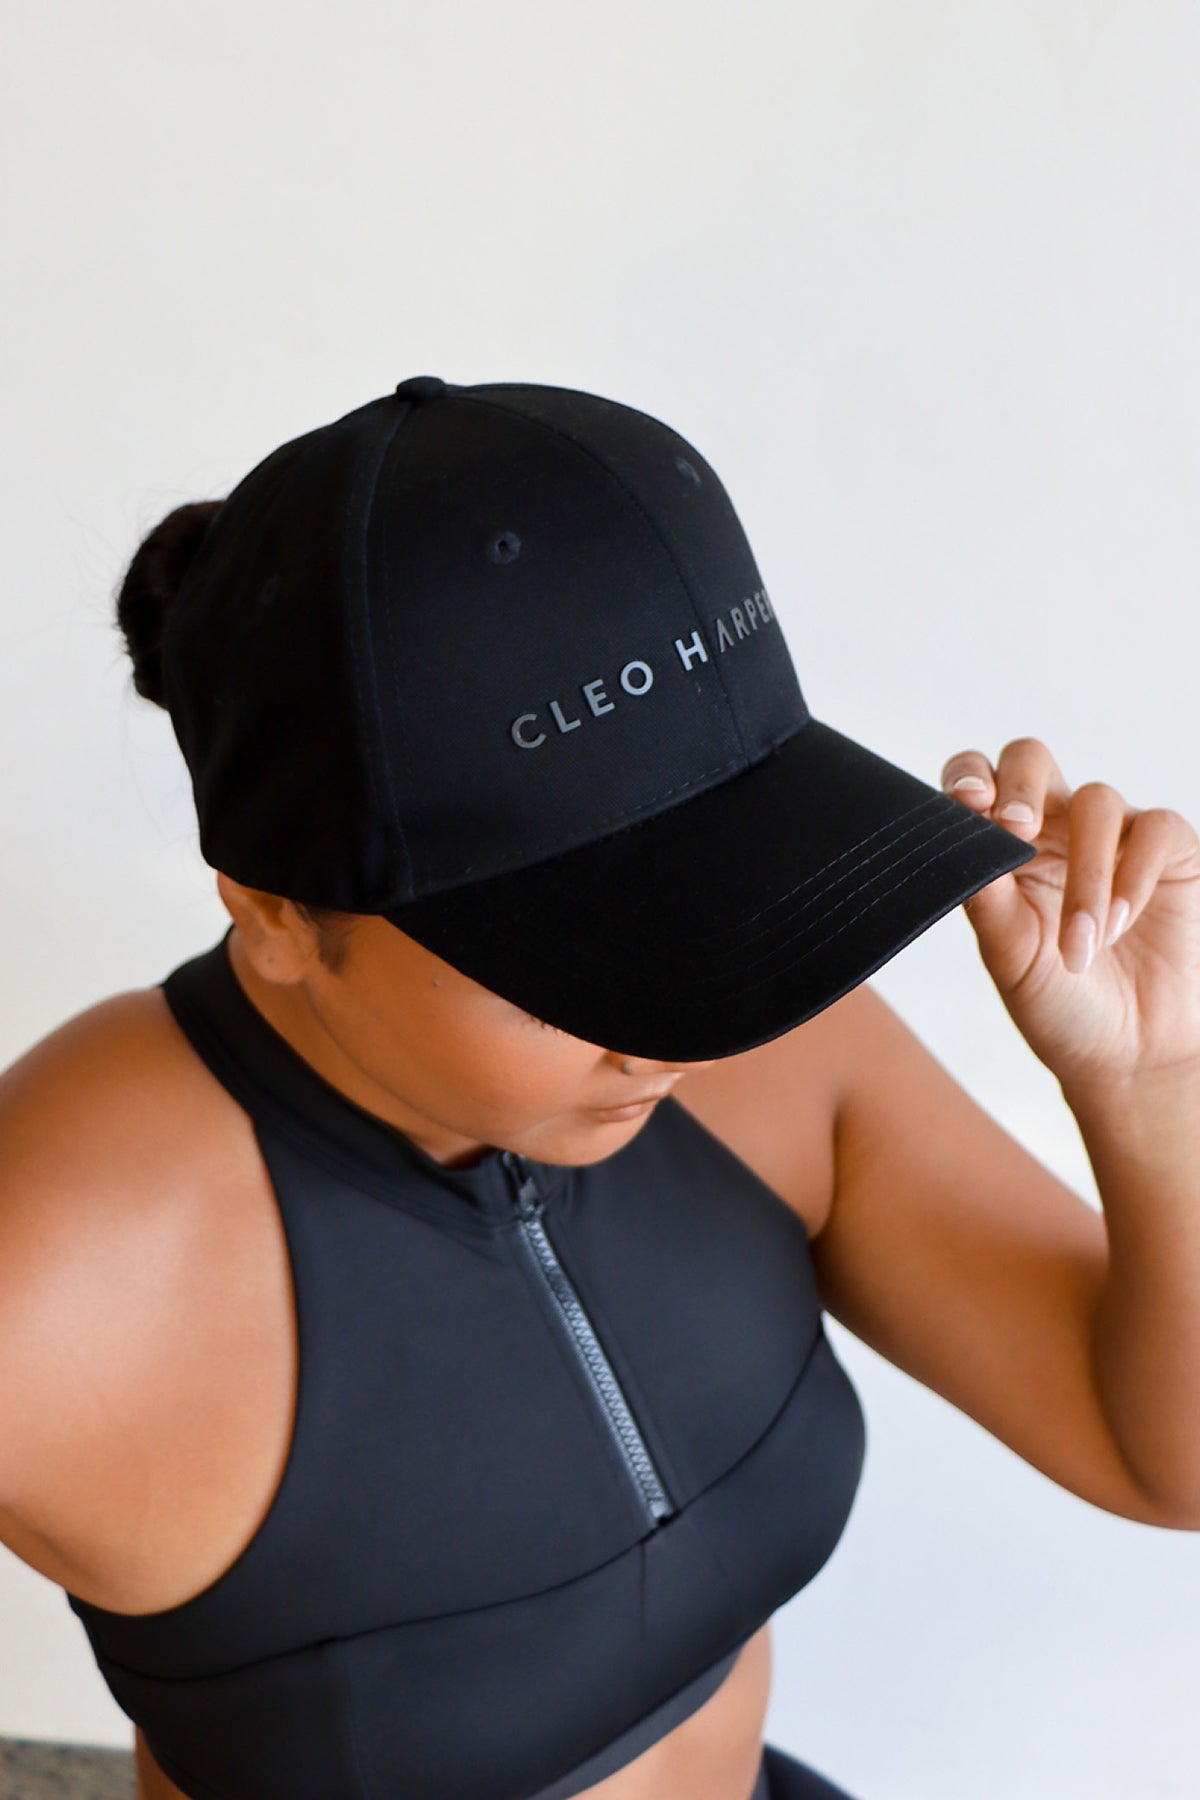 Cleo Harper Activewear - When in doubt - Classic Black #CleoCombo